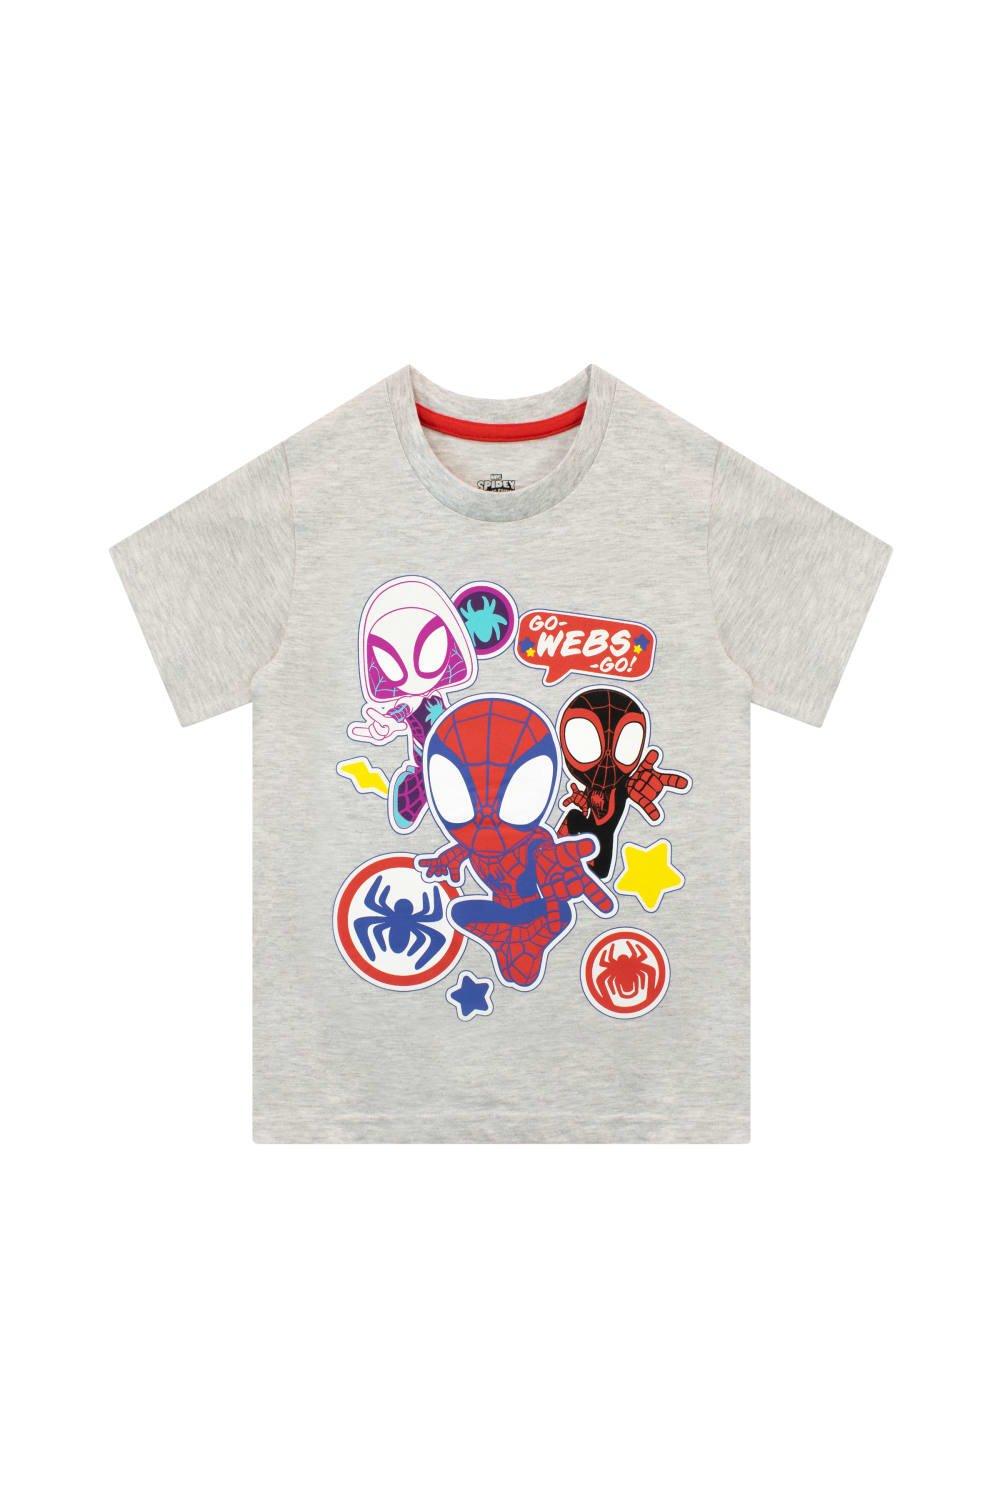 игра человек паук майлз моралес для playstation 5 Футболка Spiderman Go Webs Go Marvel, серый